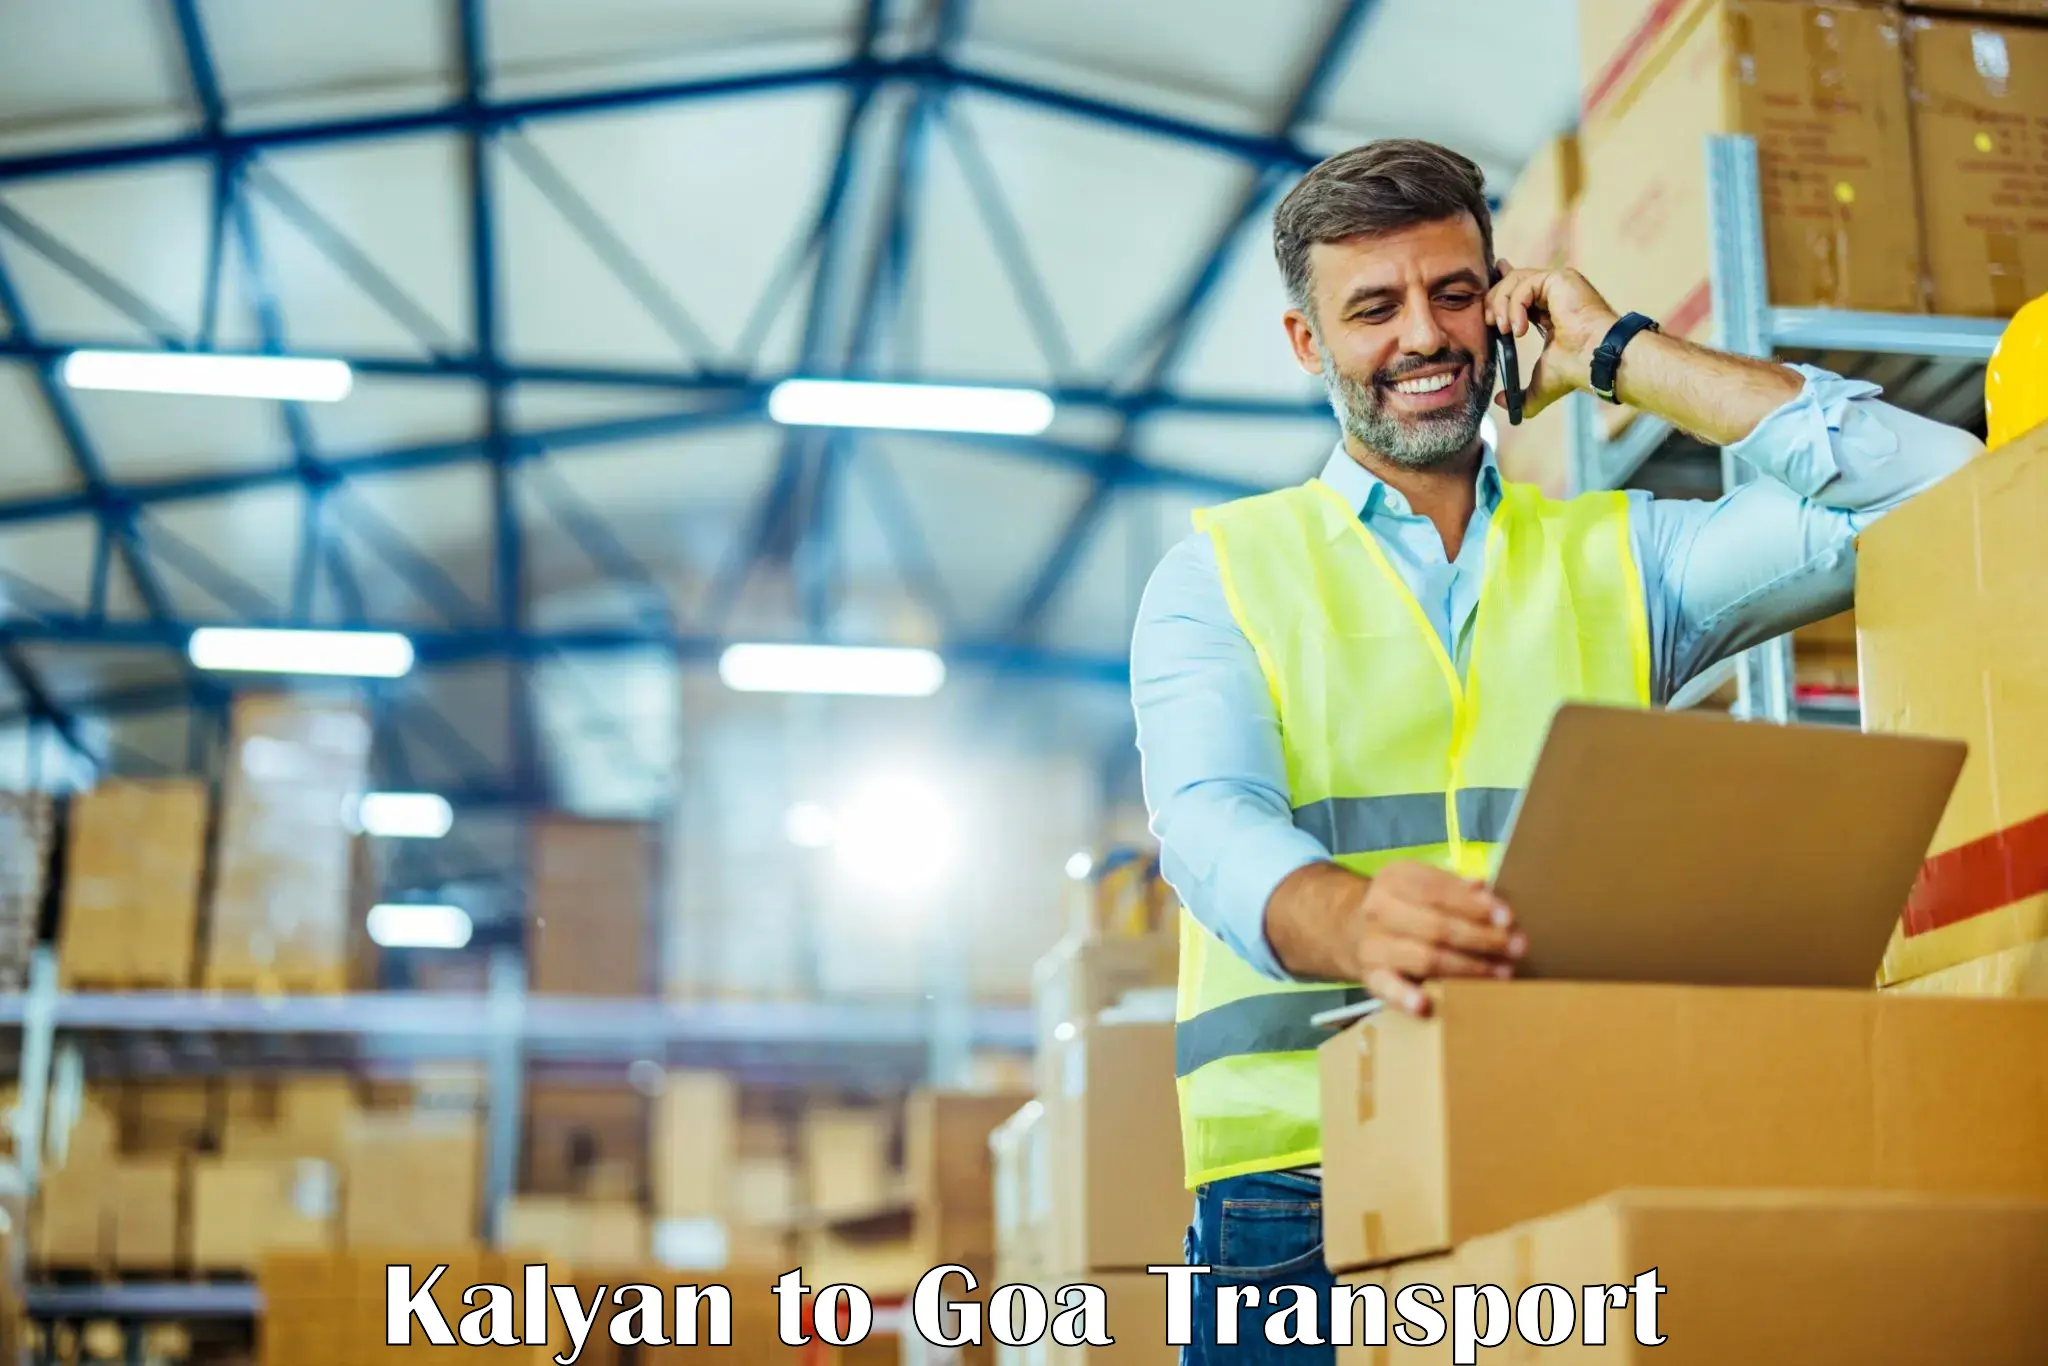 Daily parcel service transport Kalyan to Goa University